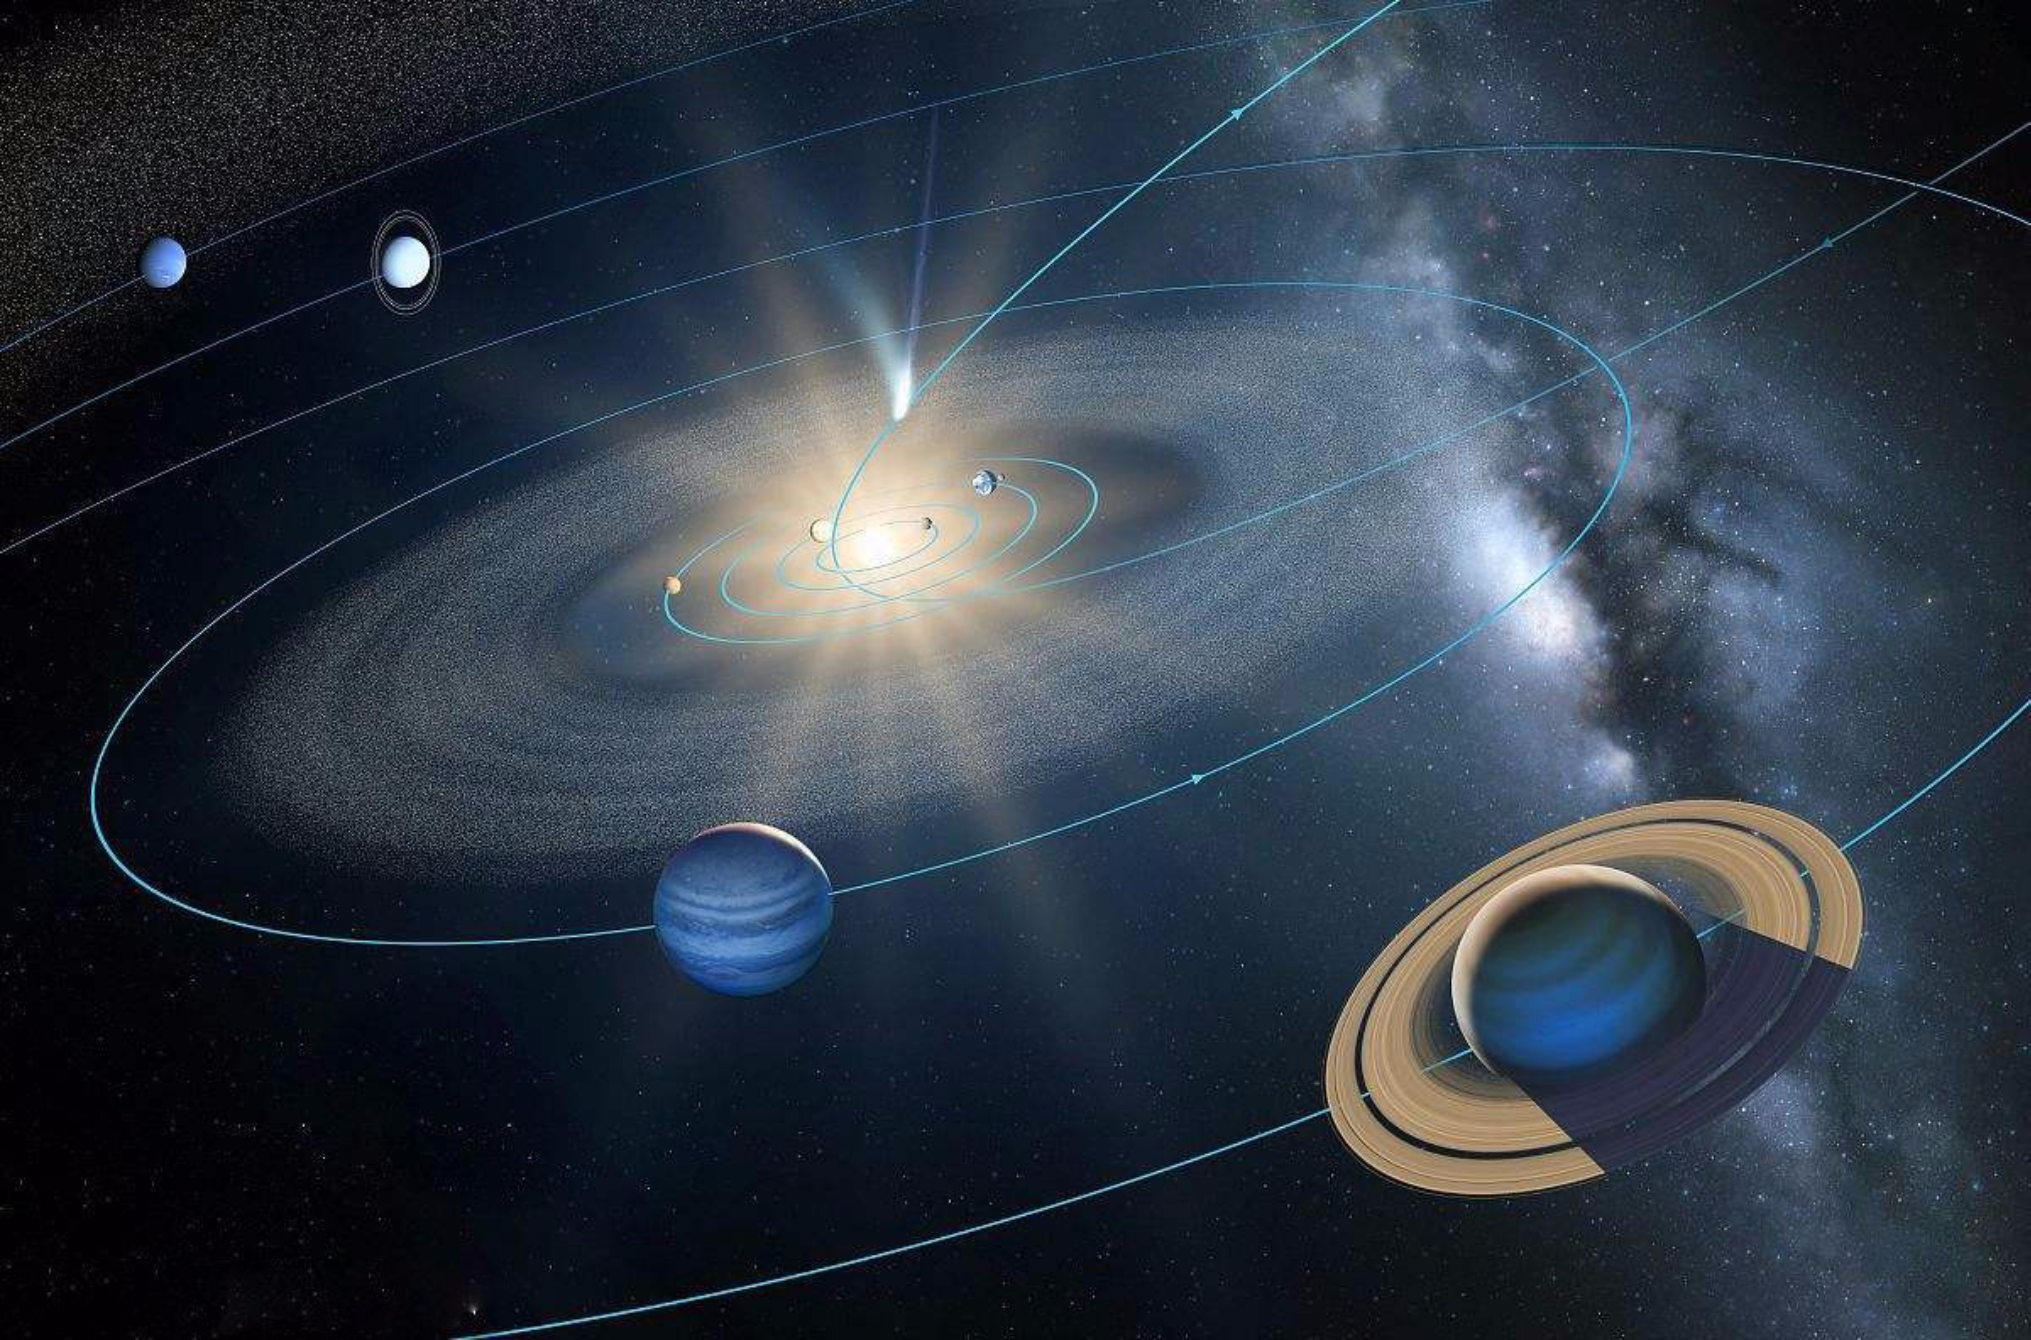 时隔22年,太阳系七星连珠再次出现,科学家神秘预言要成真?